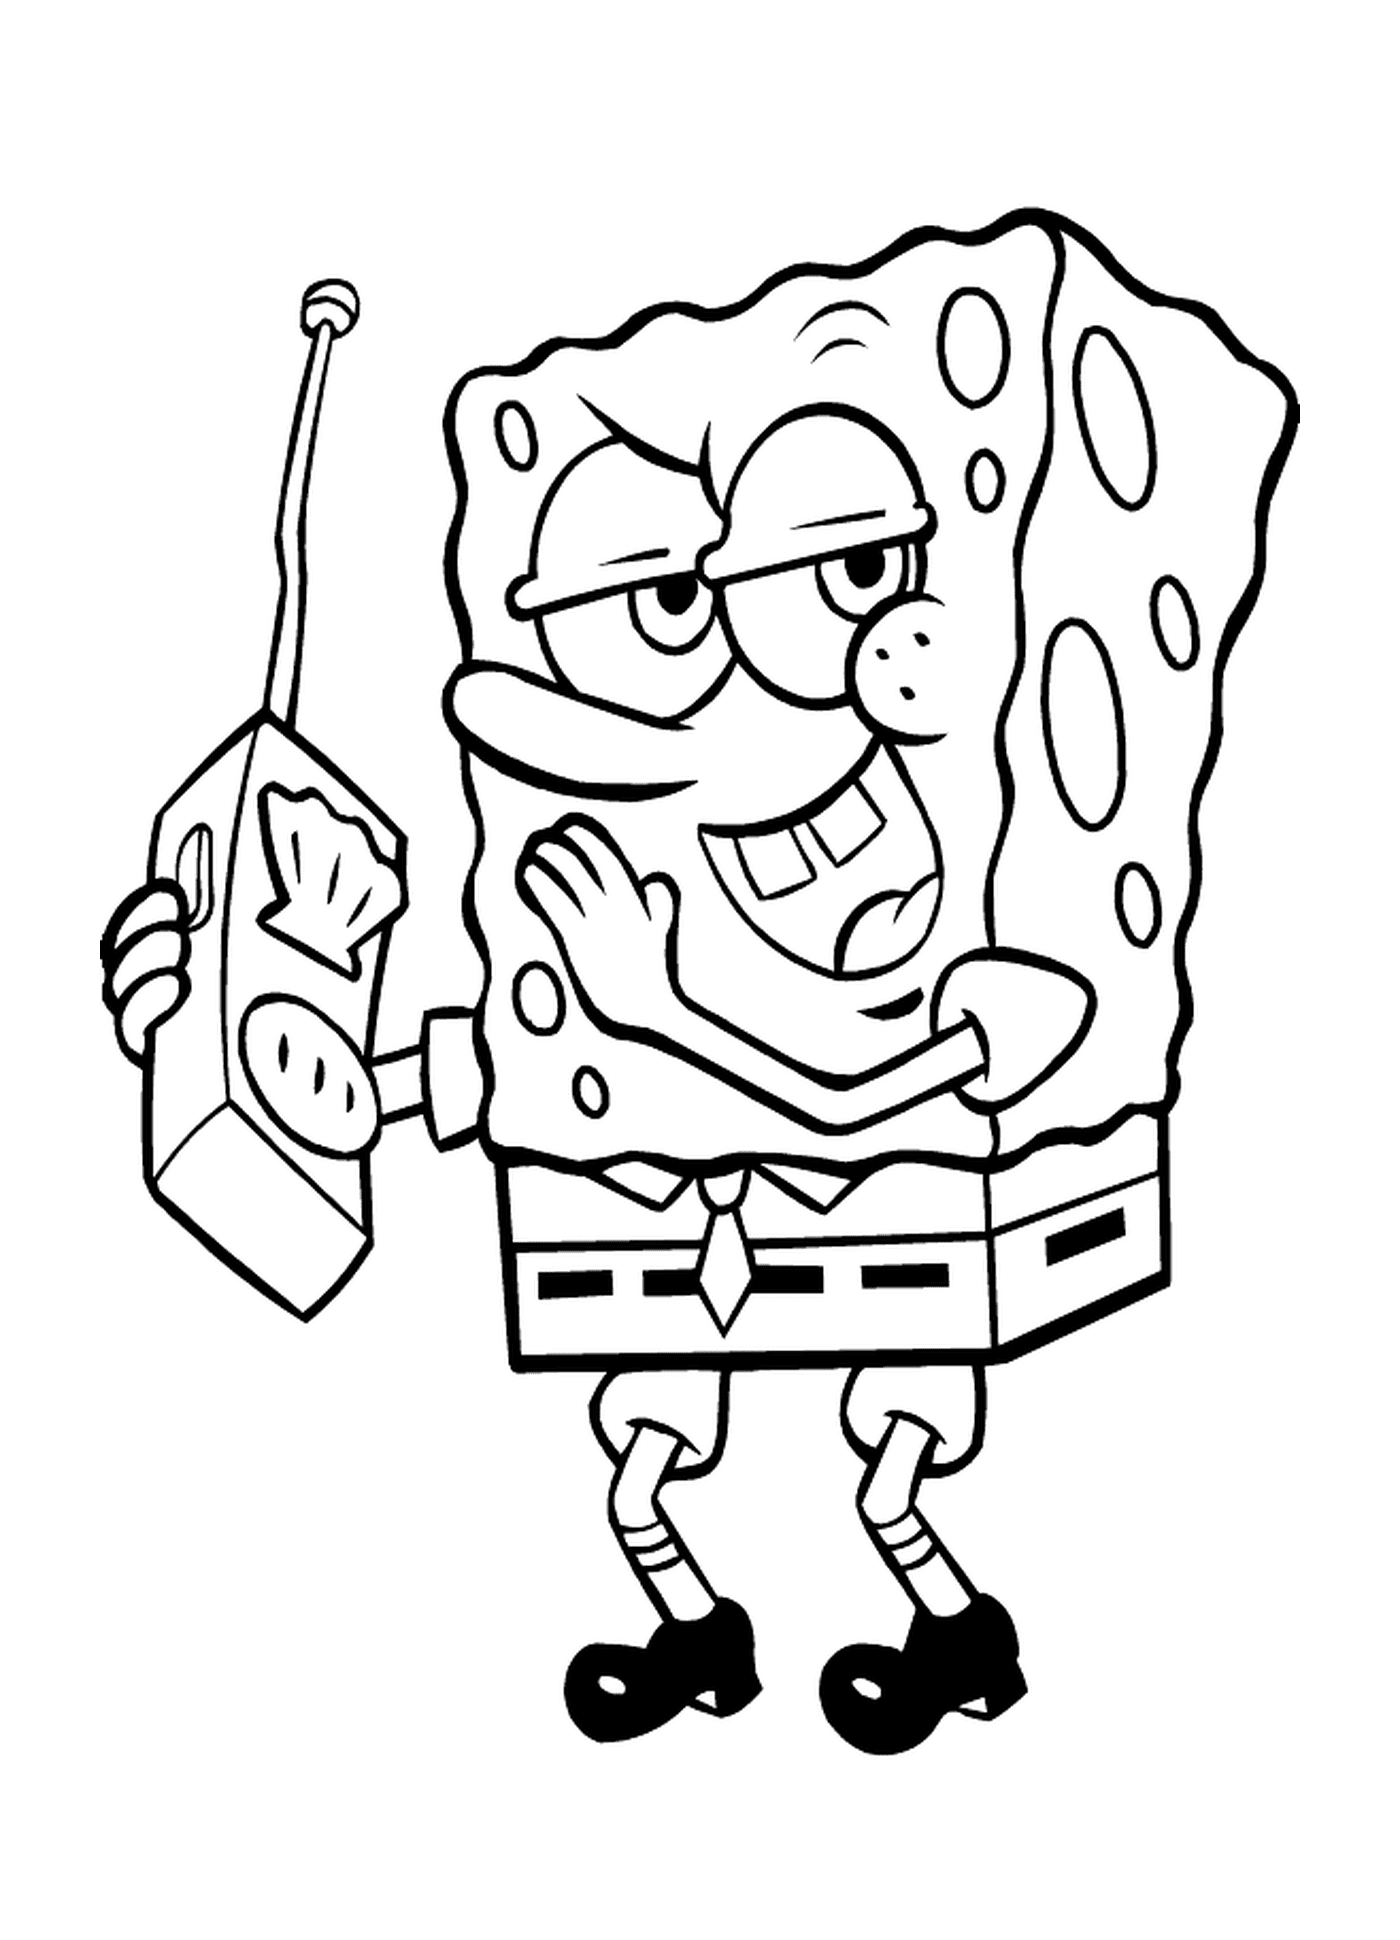  Bob the sponge holding a remote 